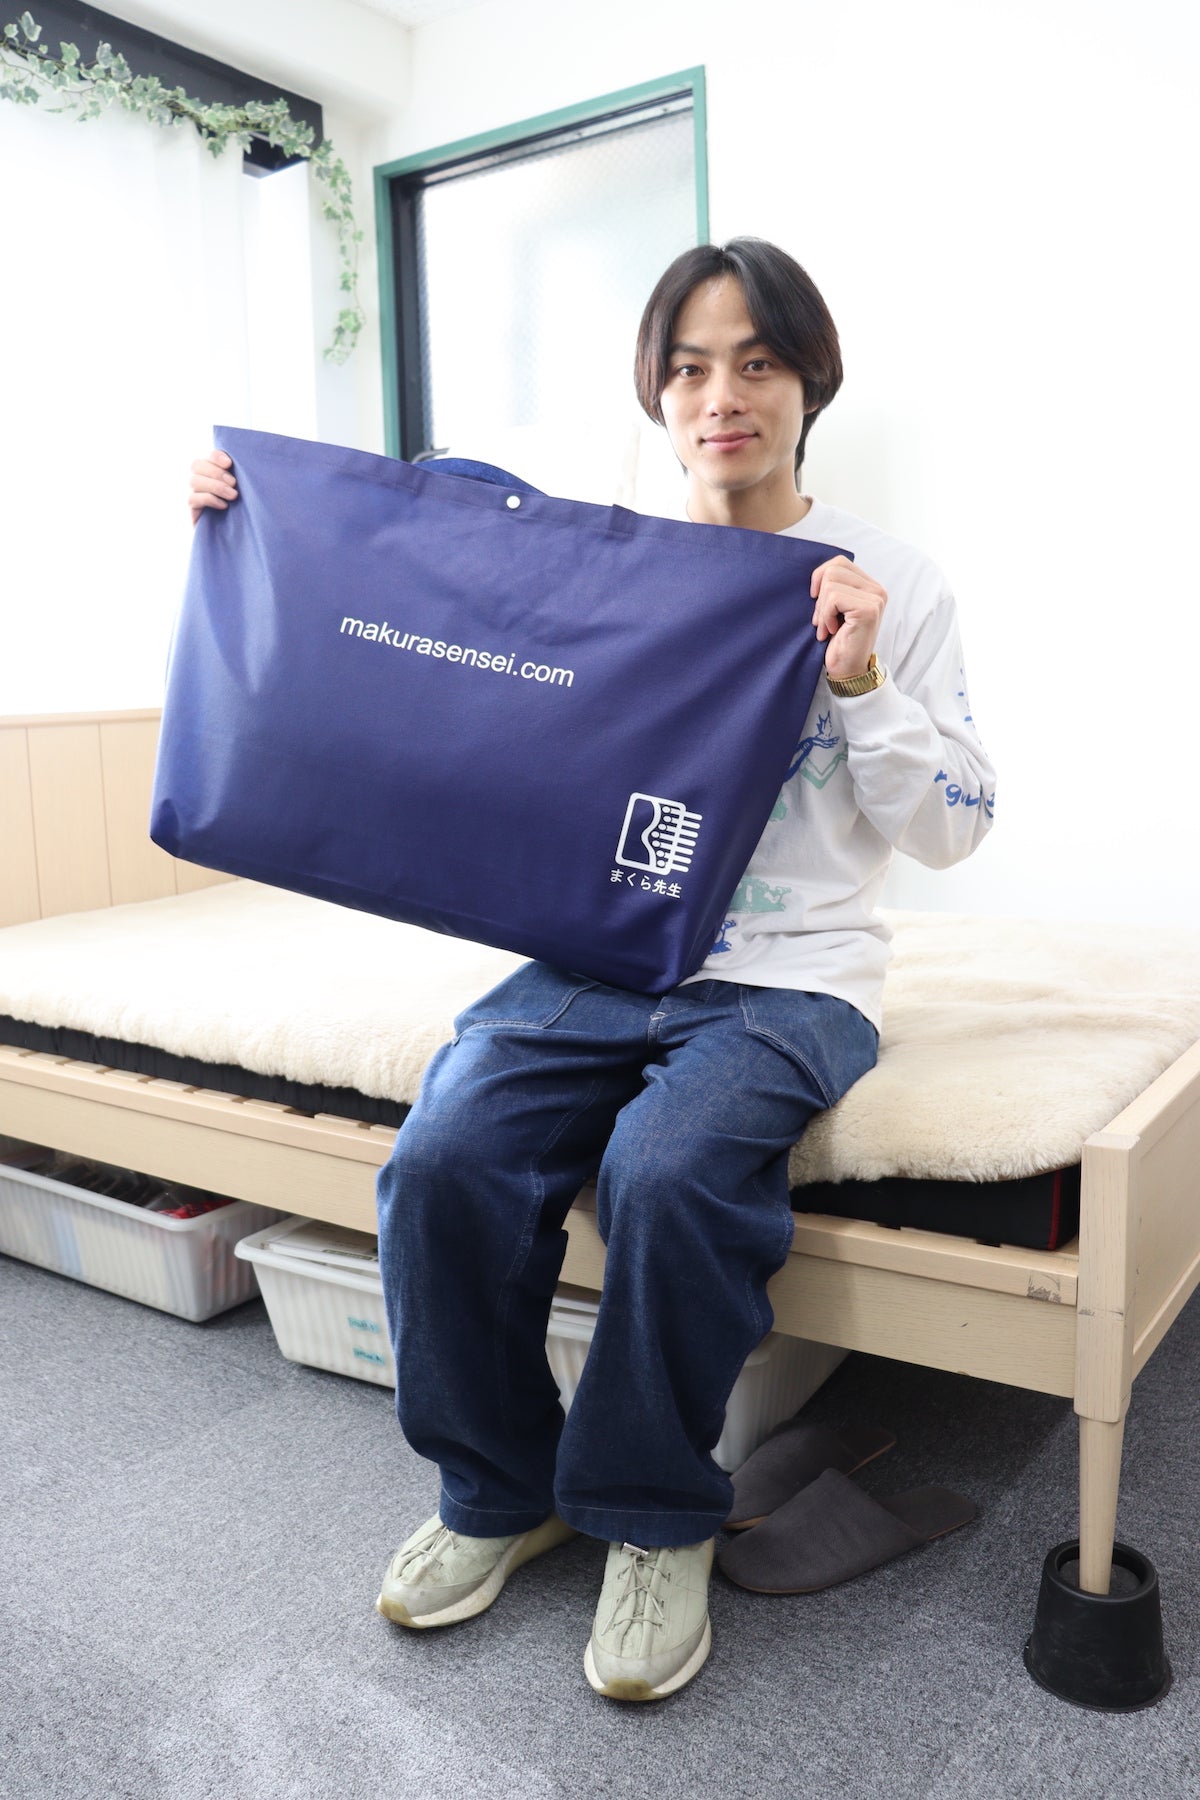 俳優の永田崇人さんがオーダーメイド枕を作りにご来店